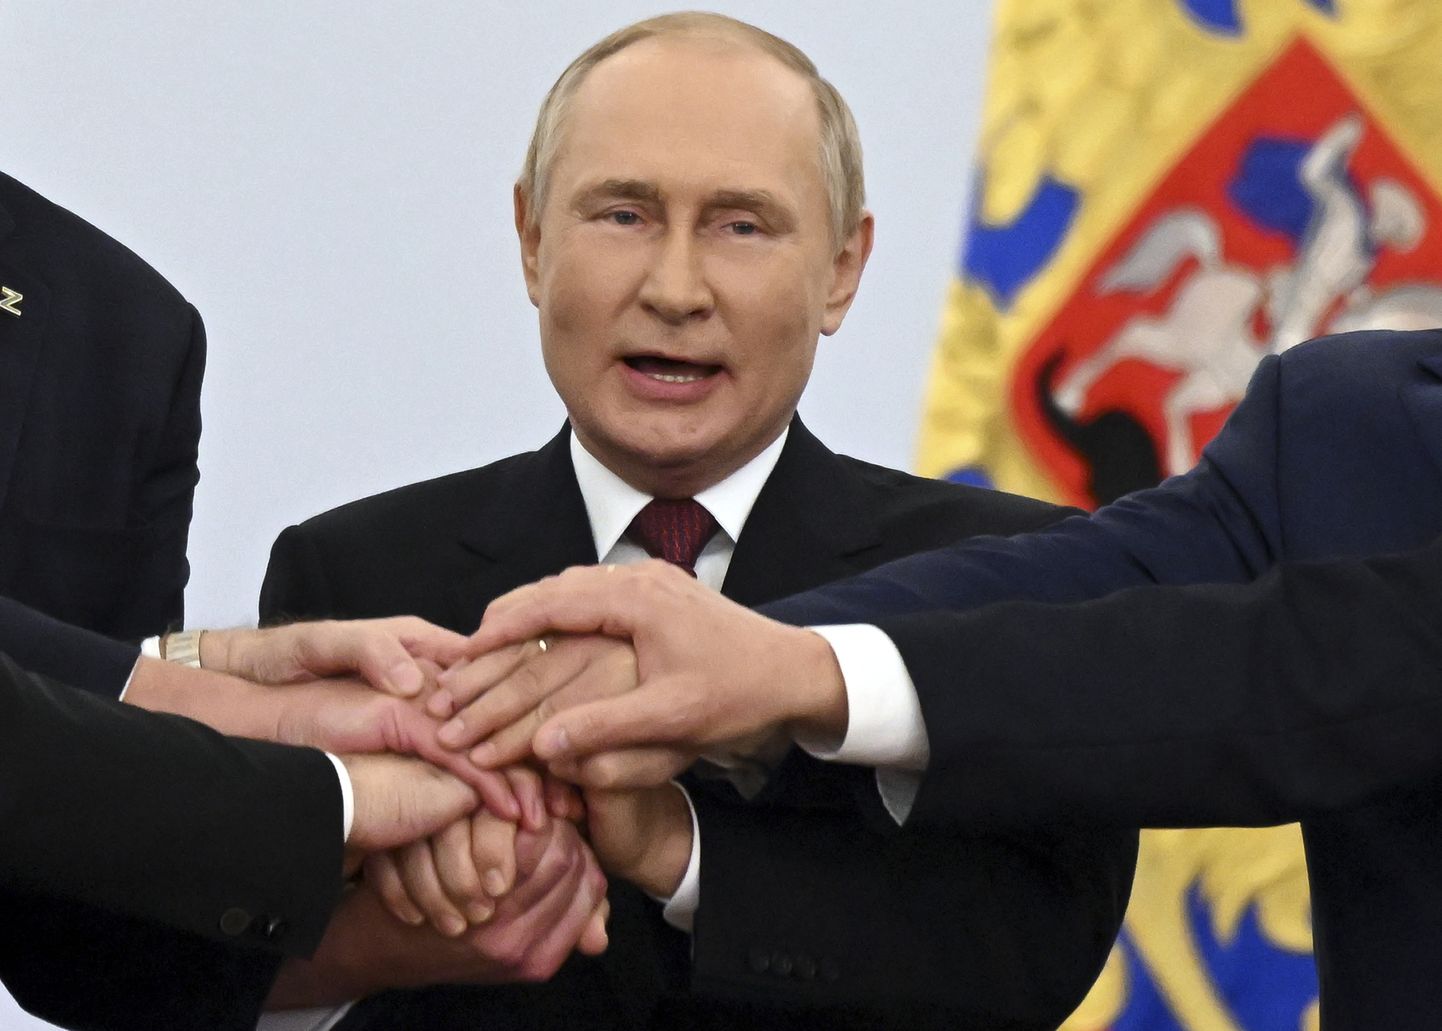 Vene diktaator Vladimir Putin oma käsilastega miilustamas.